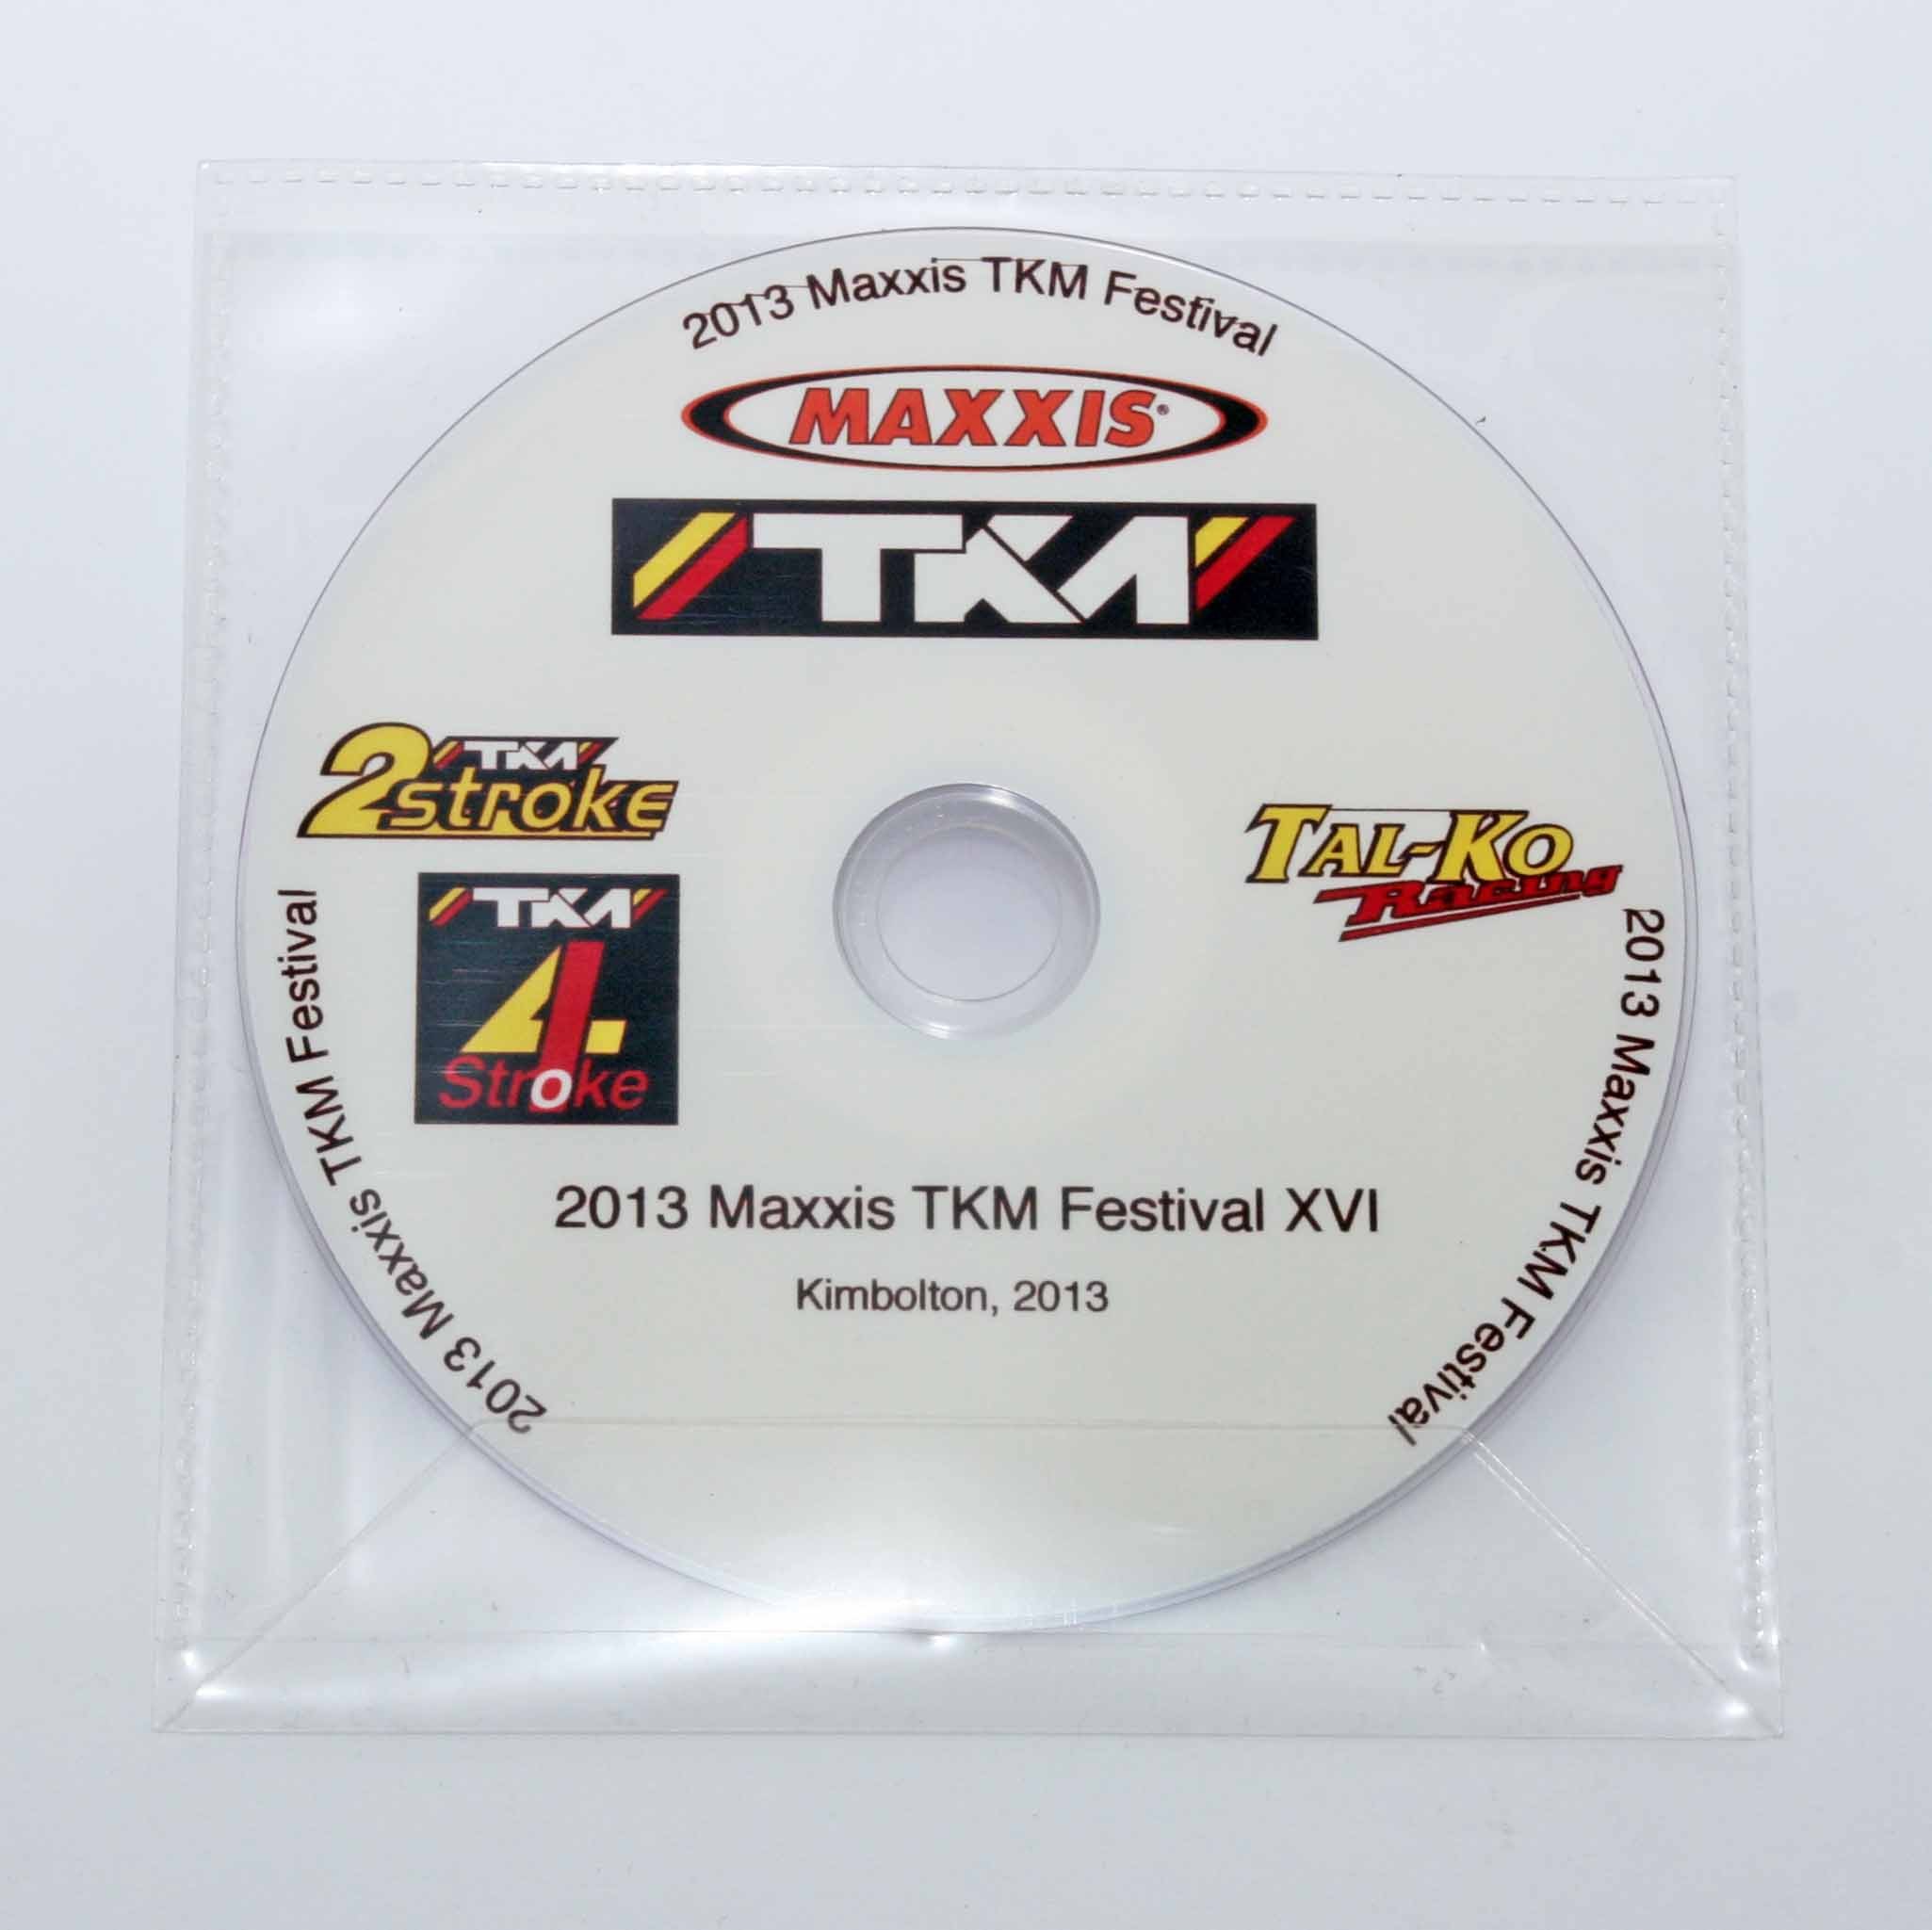 2013 MAXXIS TKM FESTIVAL DVD